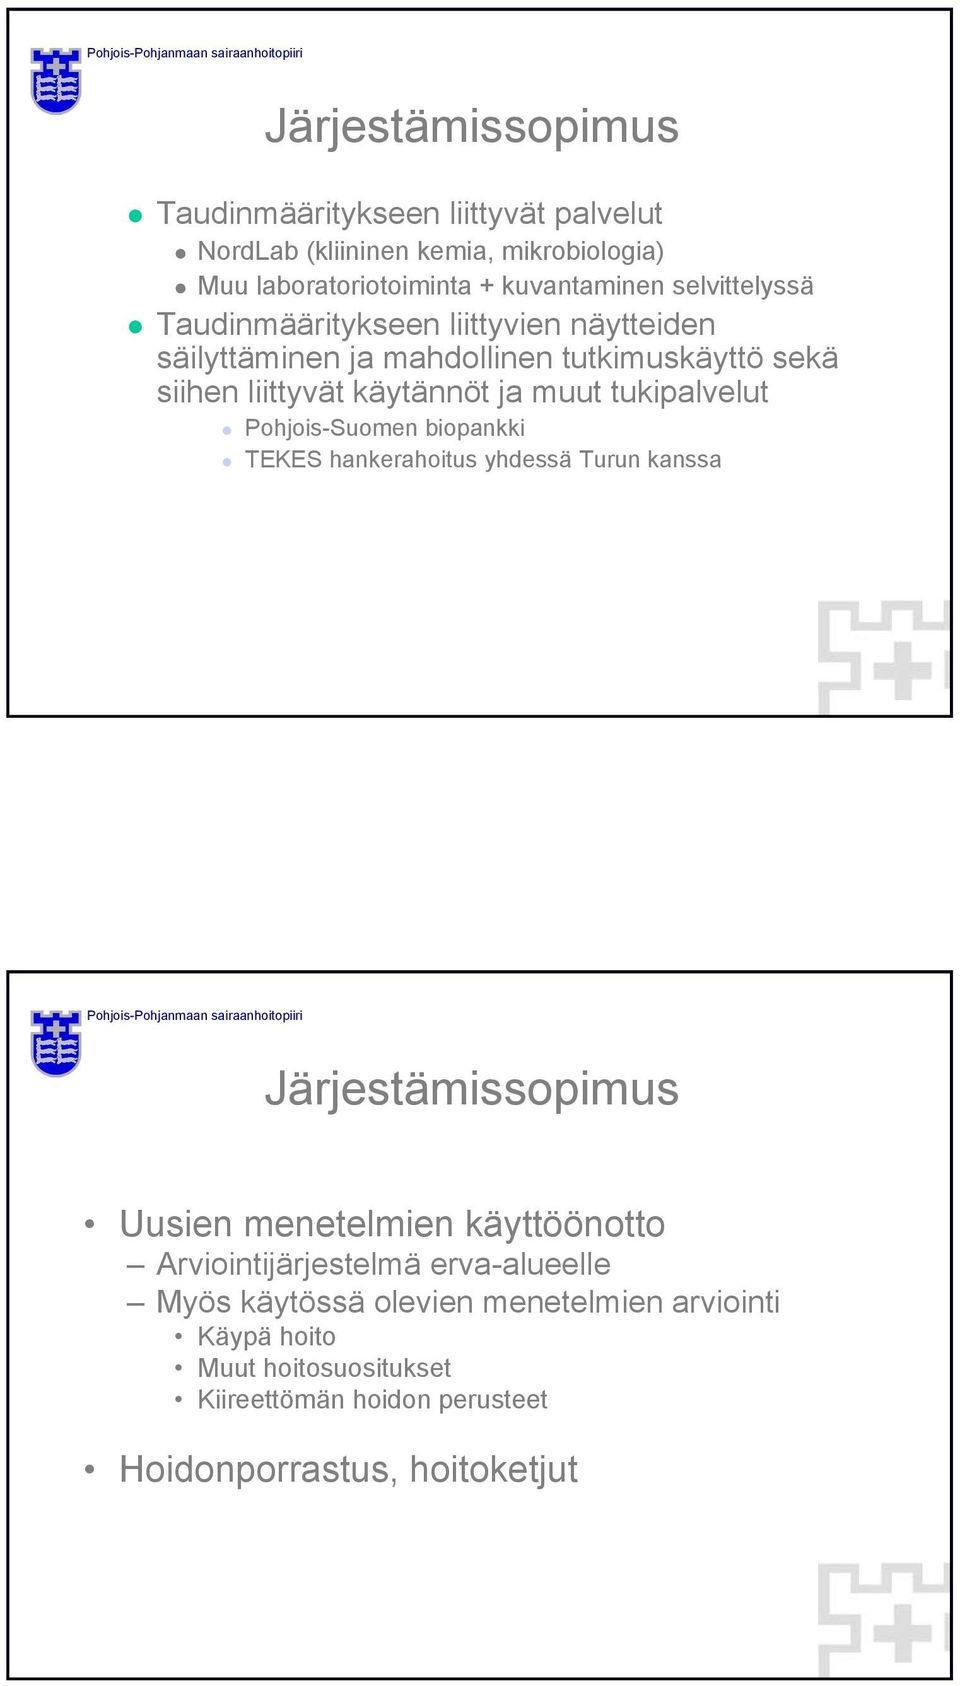 tukipalvelut Pohjois-Suomen biopankki TEKES hankerahoitus yhdessä Turun kanssa Järjestämissopimus Uusien menetelmien käyttöönotto